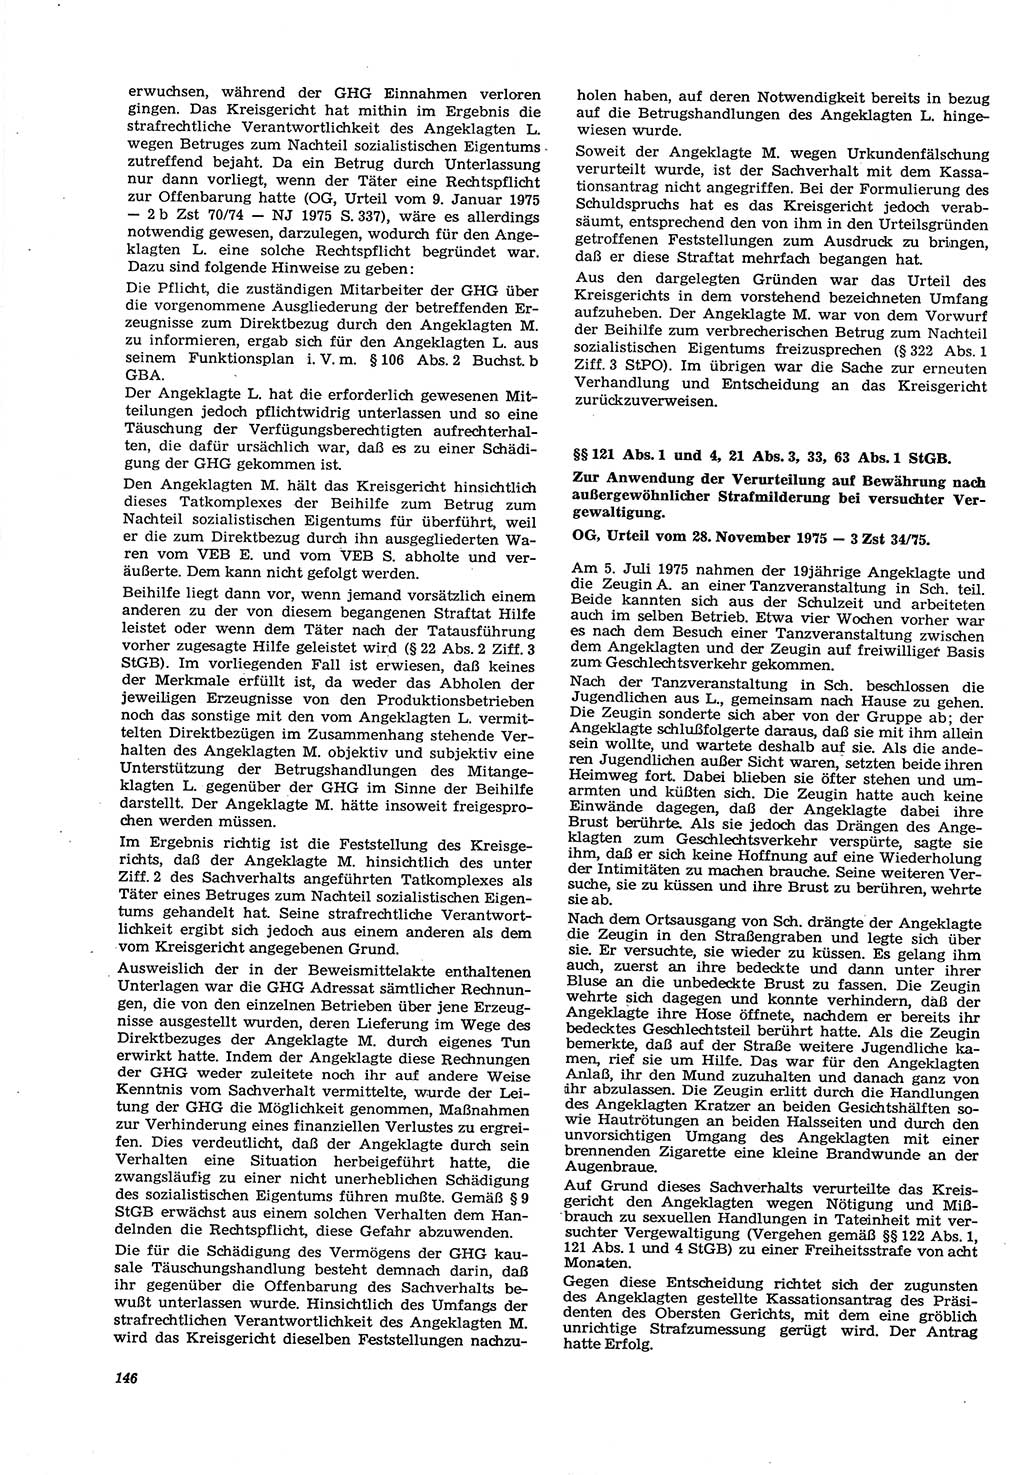 Neue Justiz (NJ), Zeitschrift für Recht und Rechtswissenschaft [Deutsche Demokratische Republik (DDR)], 30. Jahrgang 1976, Seite 146 (NJ DDR 1976, S. 146)